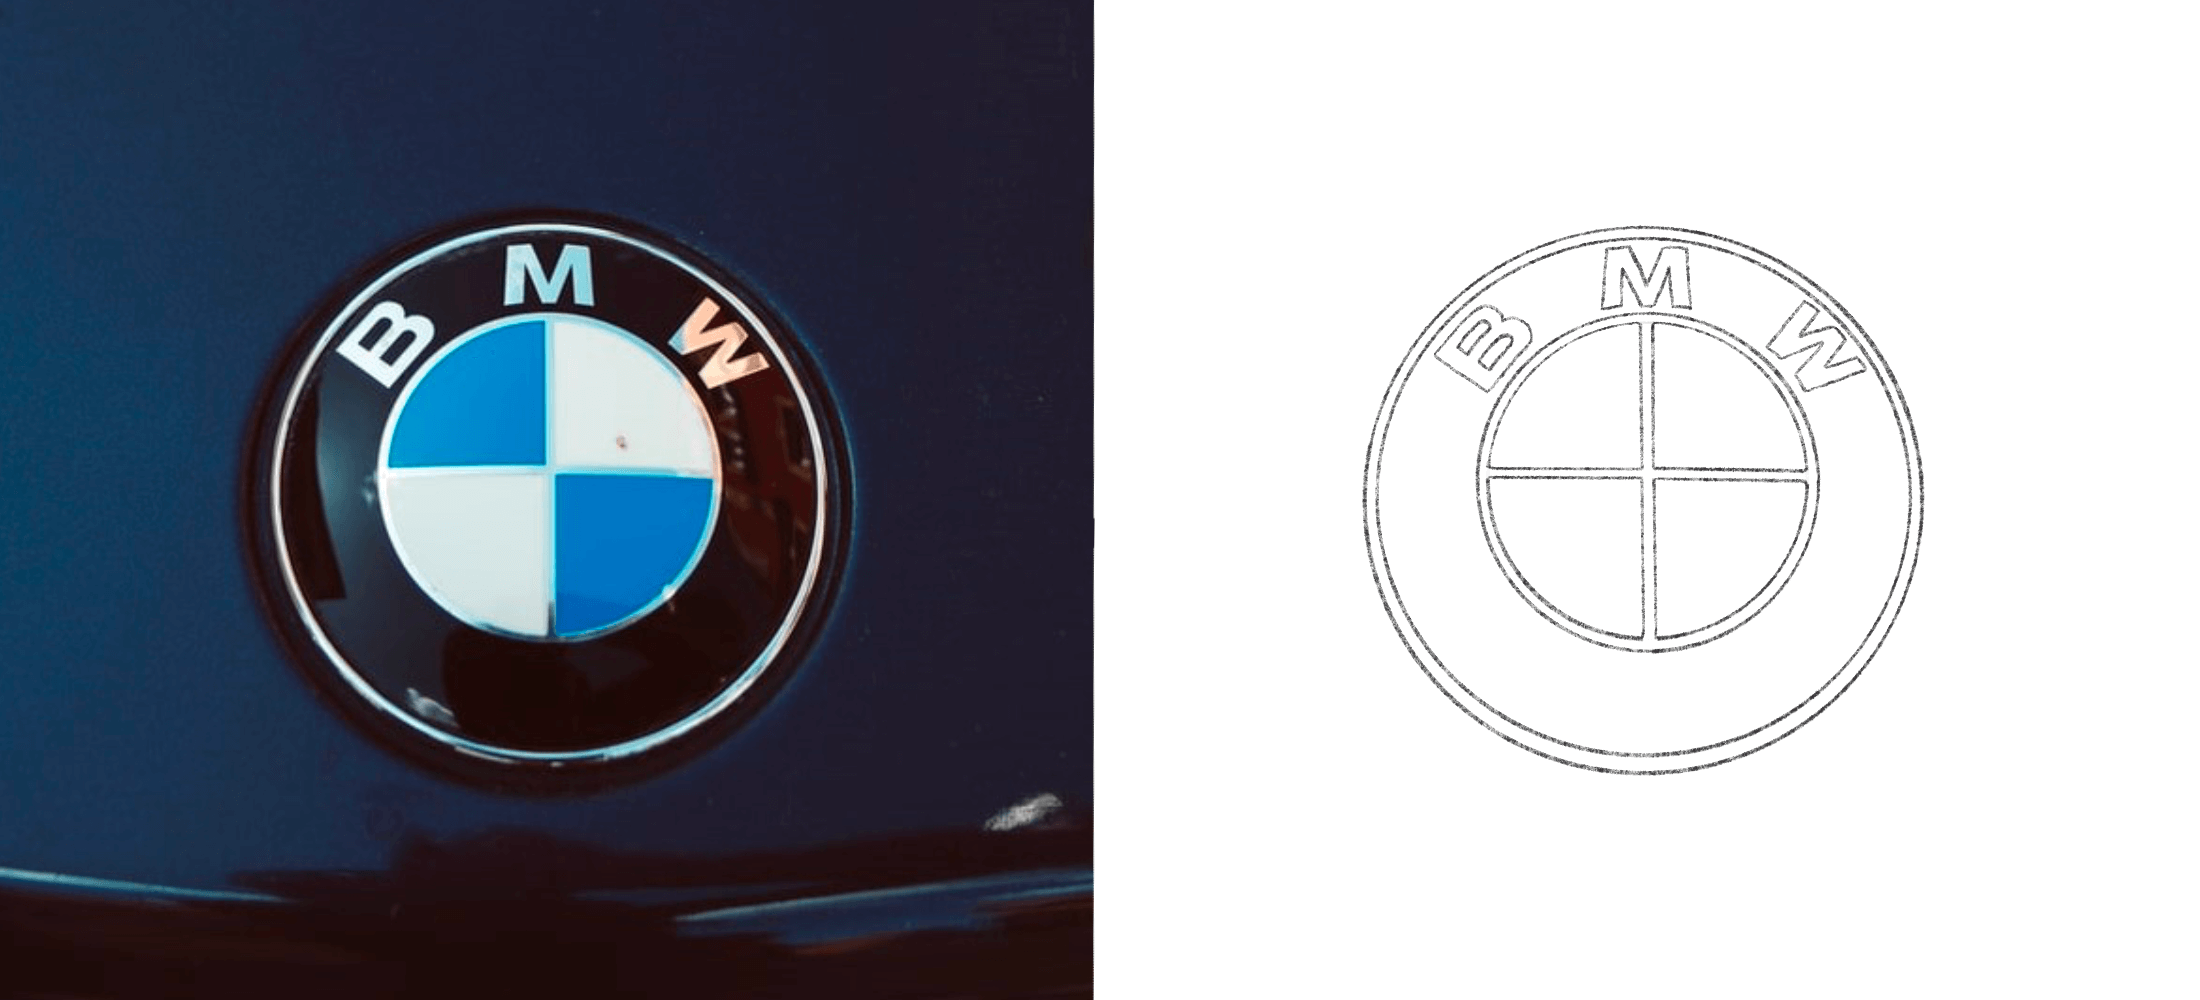 The BMW emblem on a car alongside a drawn version of the BMW logo